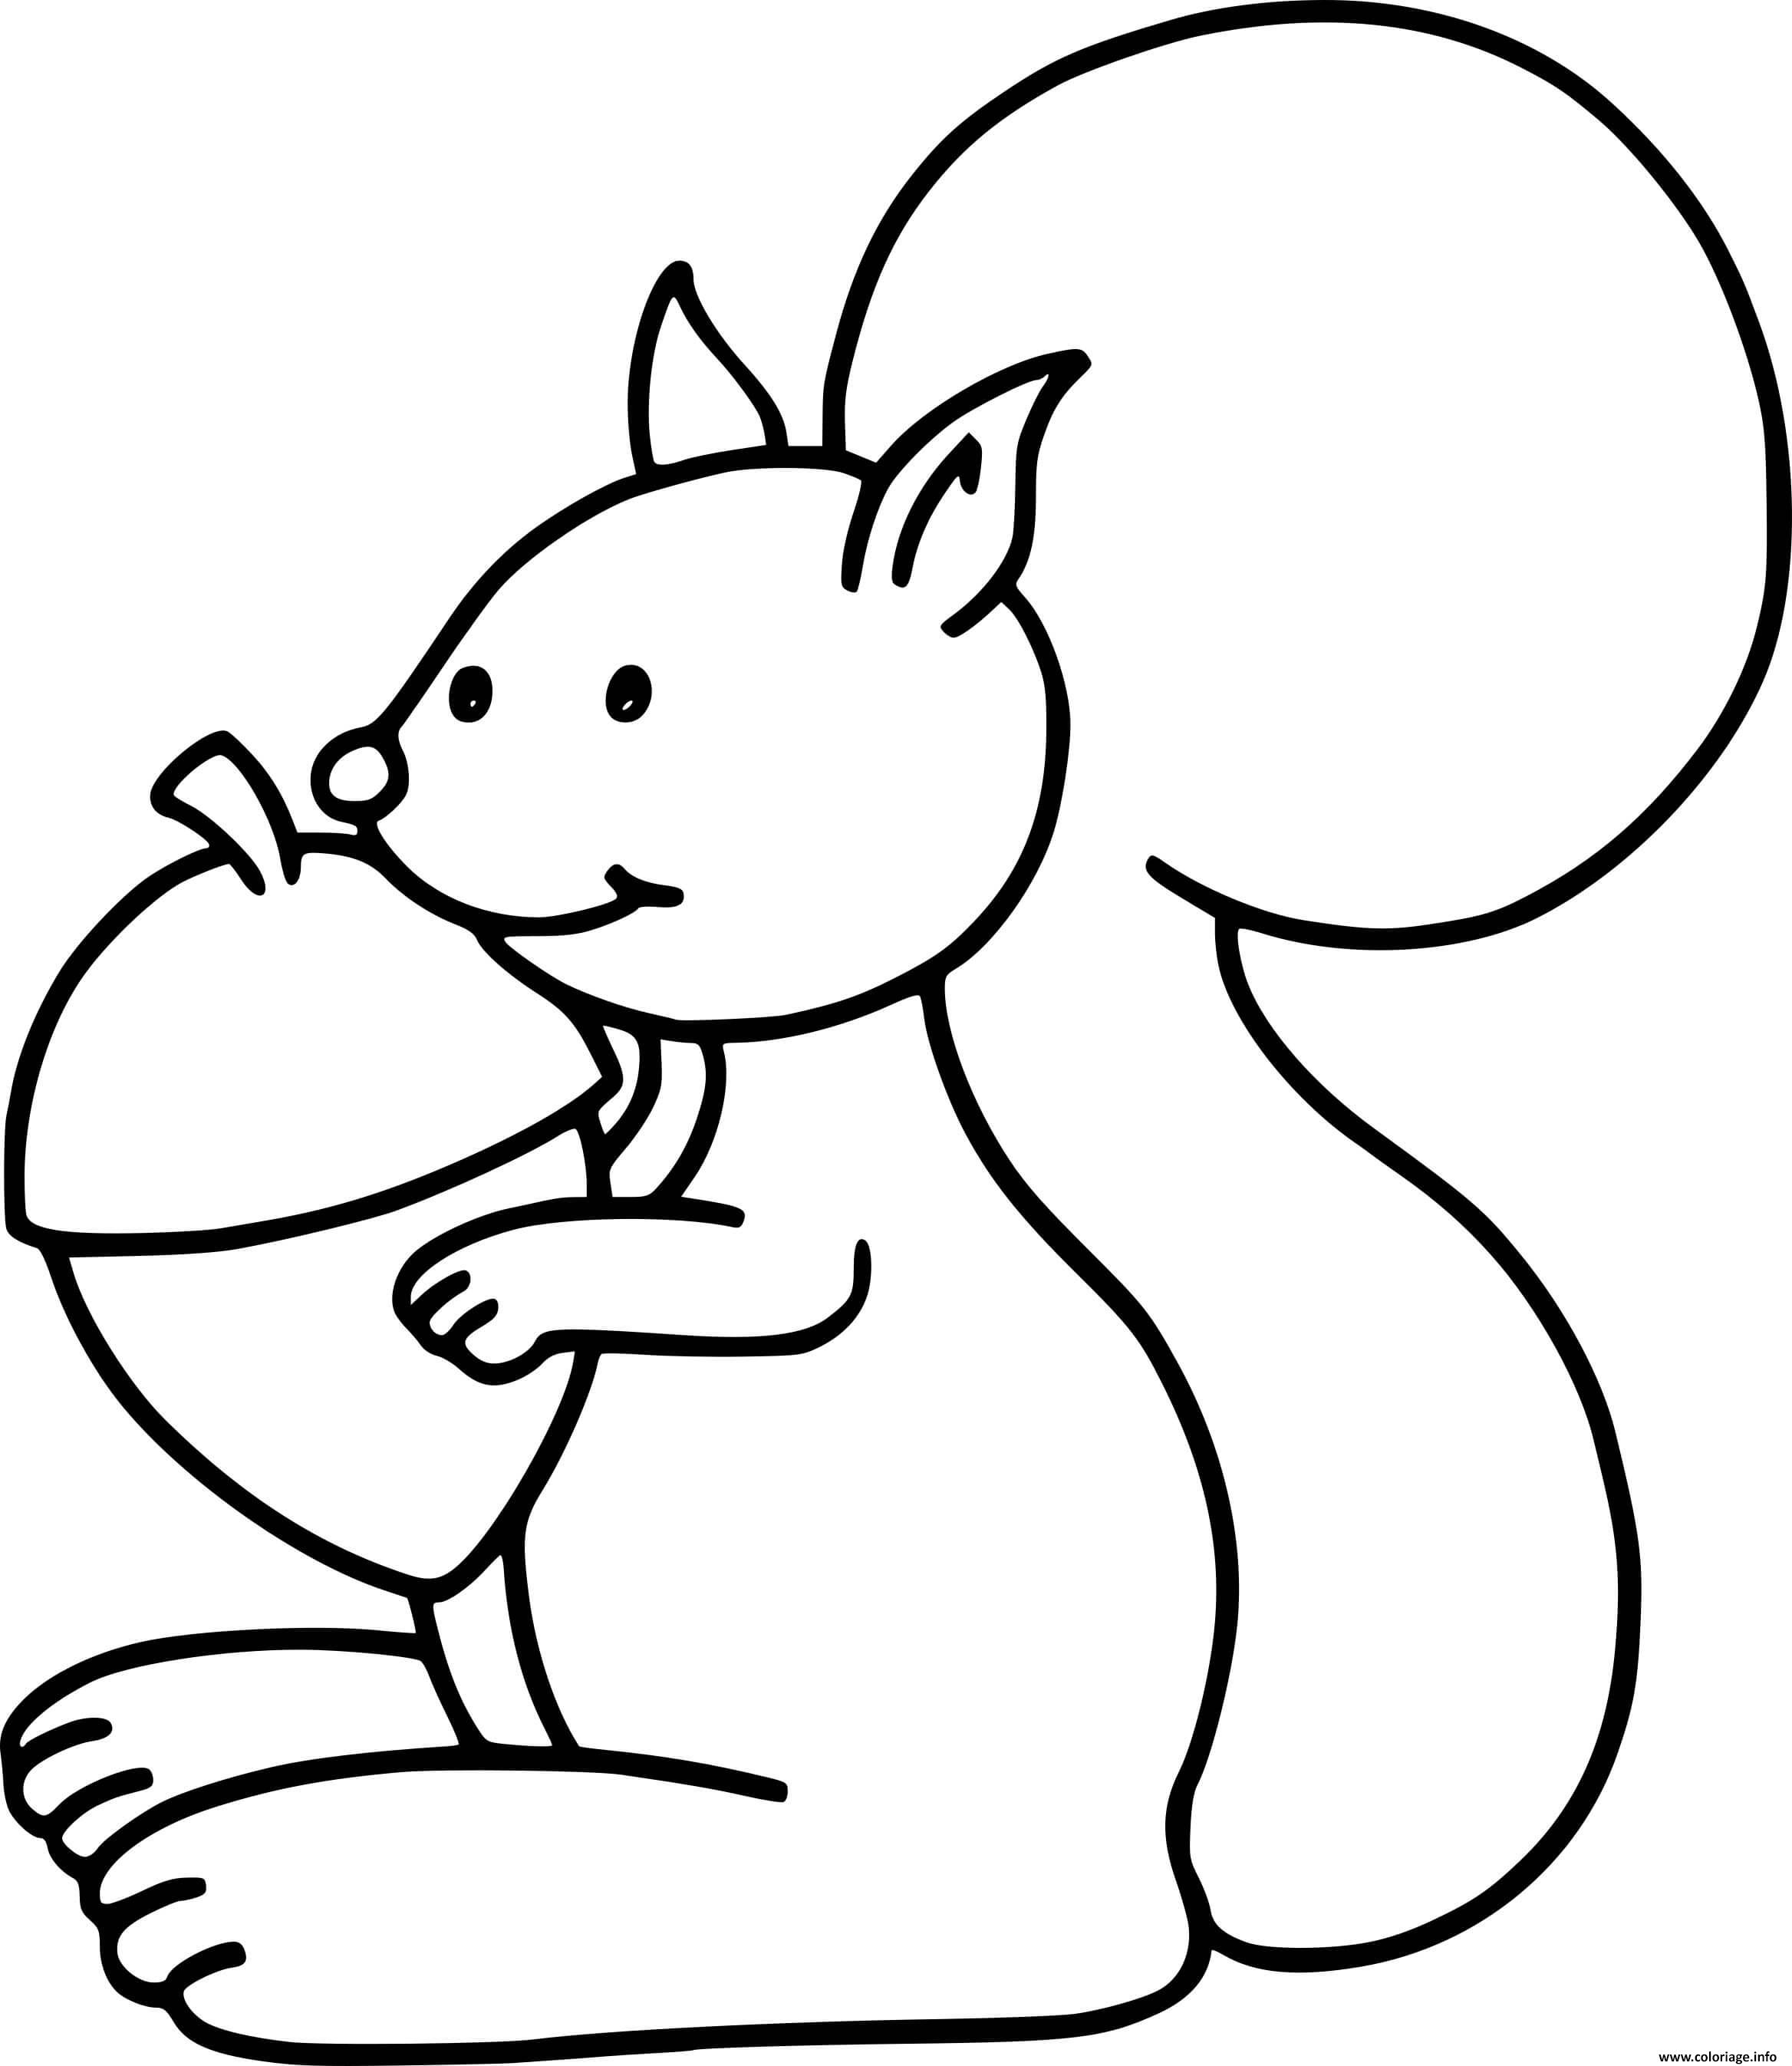 Dessin ecureuil facile maternelle Coloriage Gratuit à Imprimer